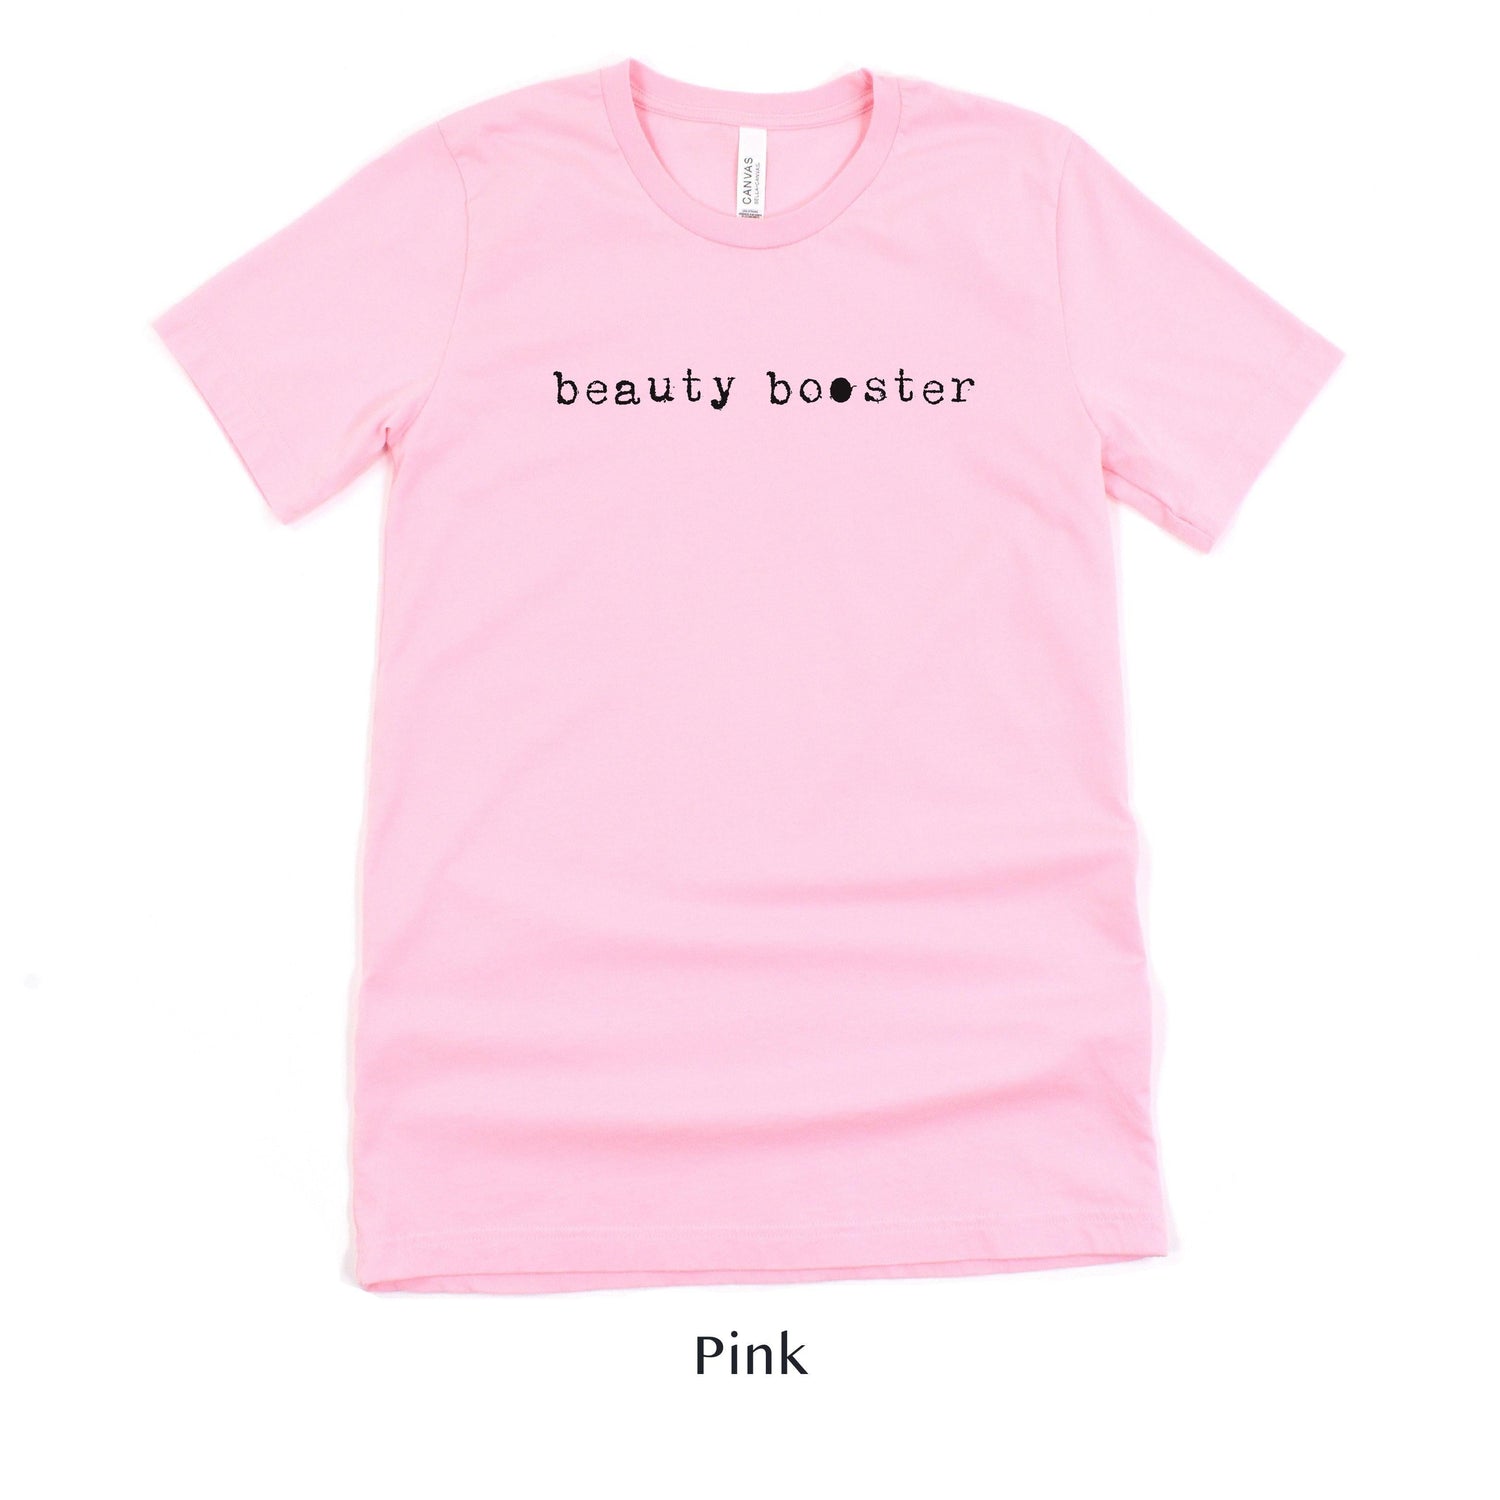 Beauty Booster - Hair and Makeup Artist shirt - HMUA Short-sleeve Tee by Oaklynn Lane - pink shirt